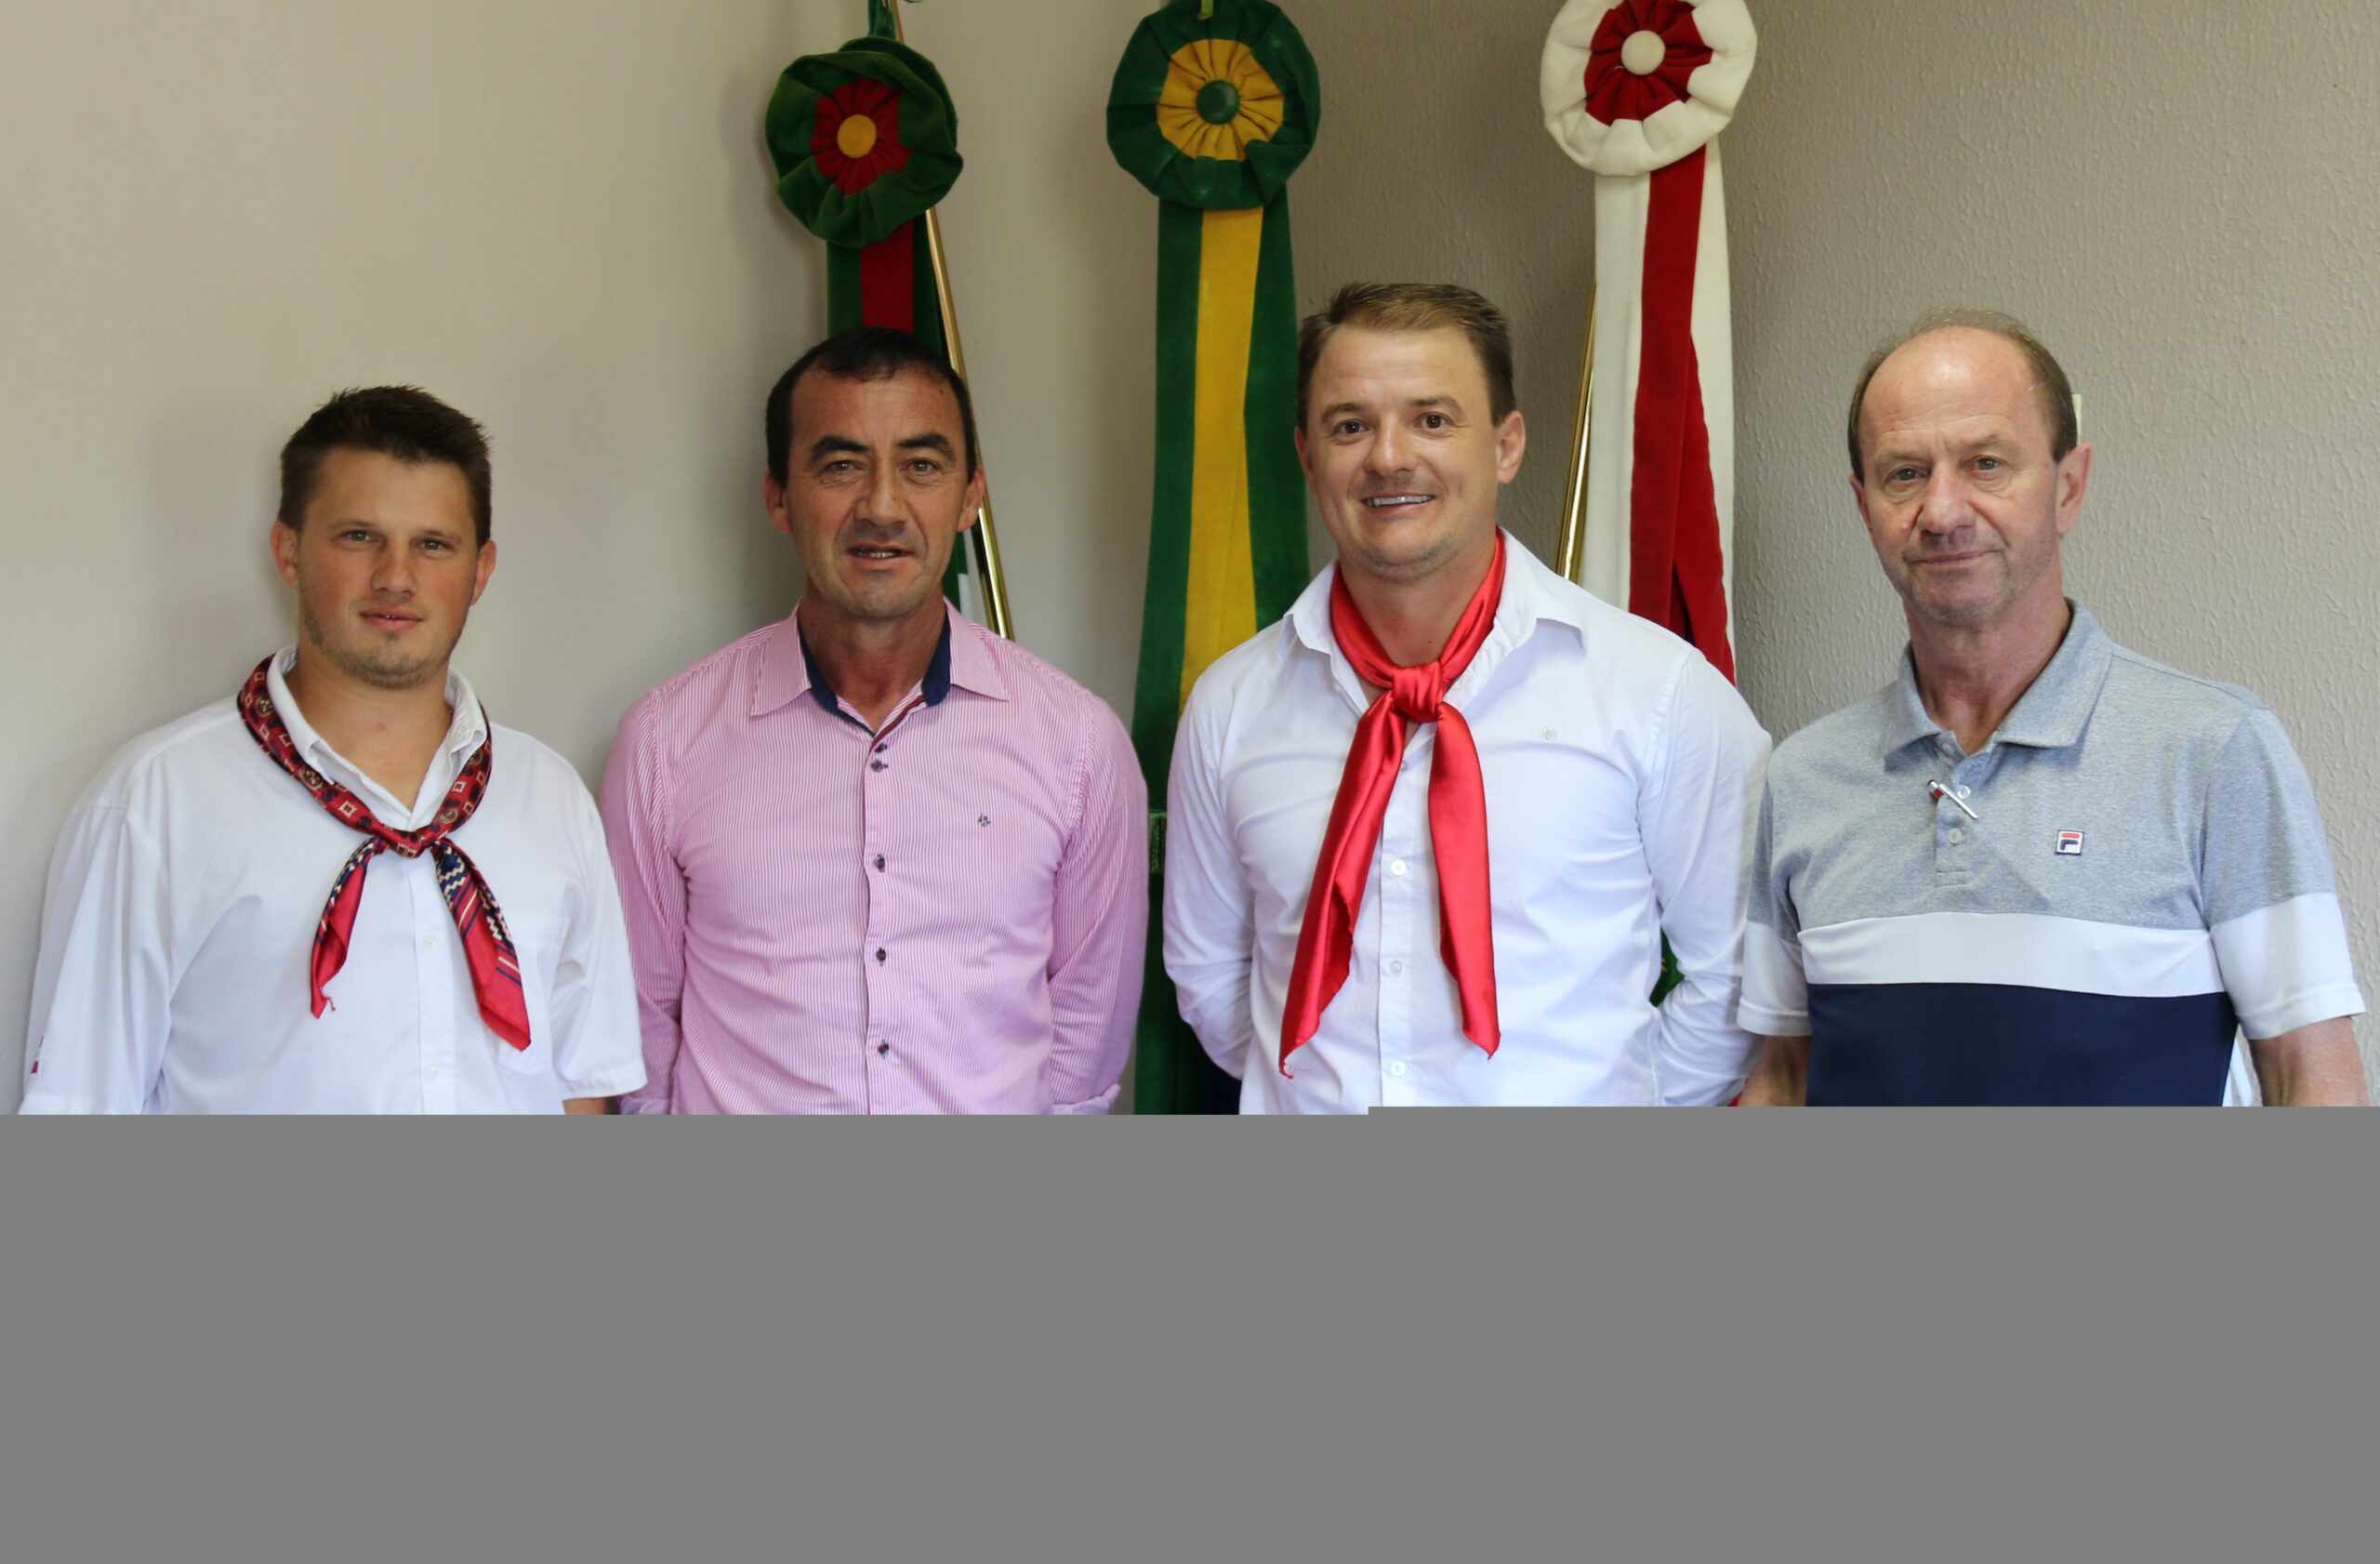 Representantes do CTG Galpão da Amizade foram recepcionados pelo prefeito em exercício Sadan e pelo Secretário Rogério Sehnem